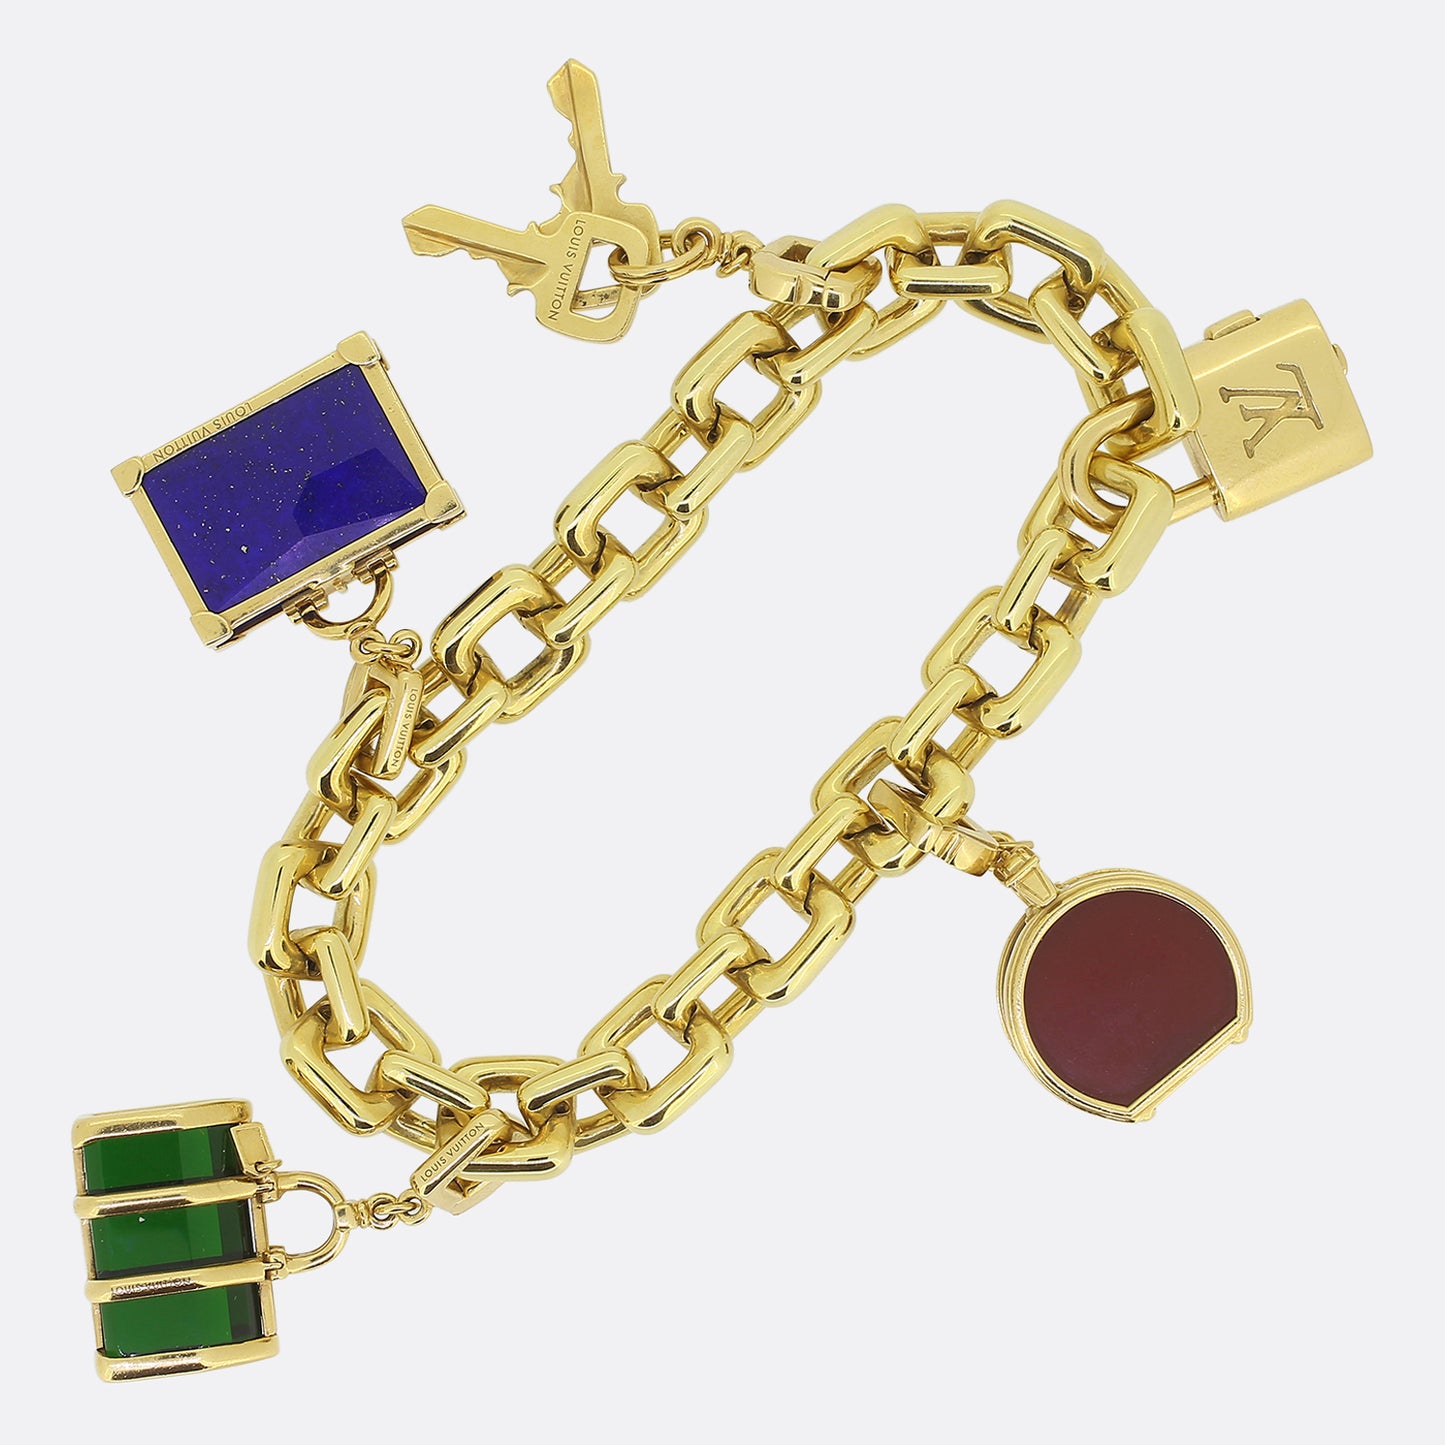 Louis Vuitton Travel Charm Bracelet